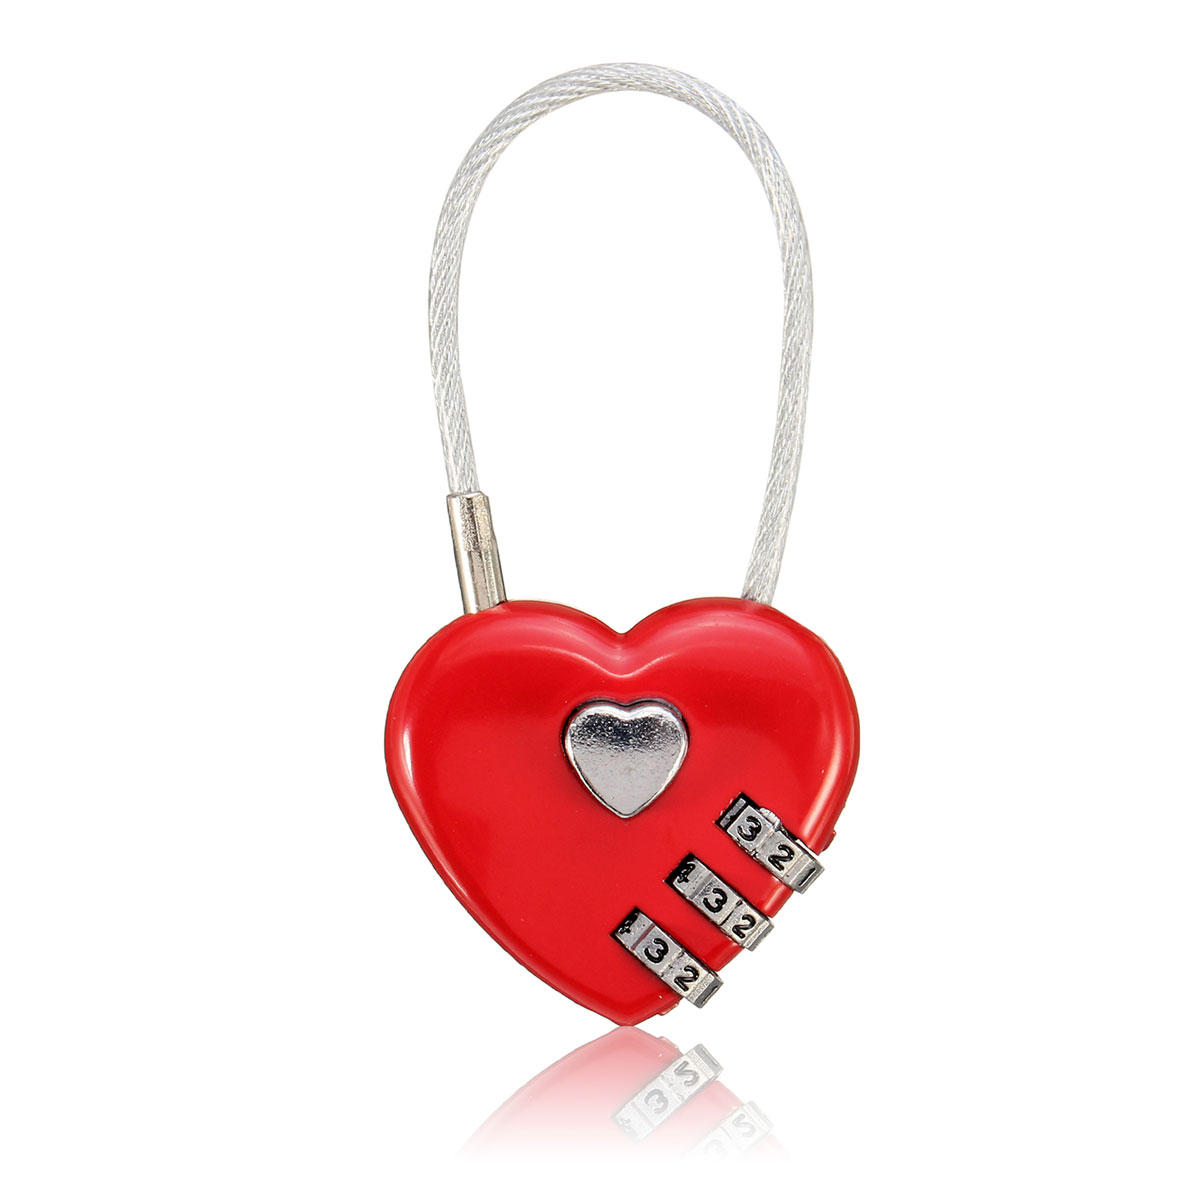 Creative Gift Idea Love Lock Gepersonaliseerd Gegraveerd Hangslot Hartvormig Slot Decoraties